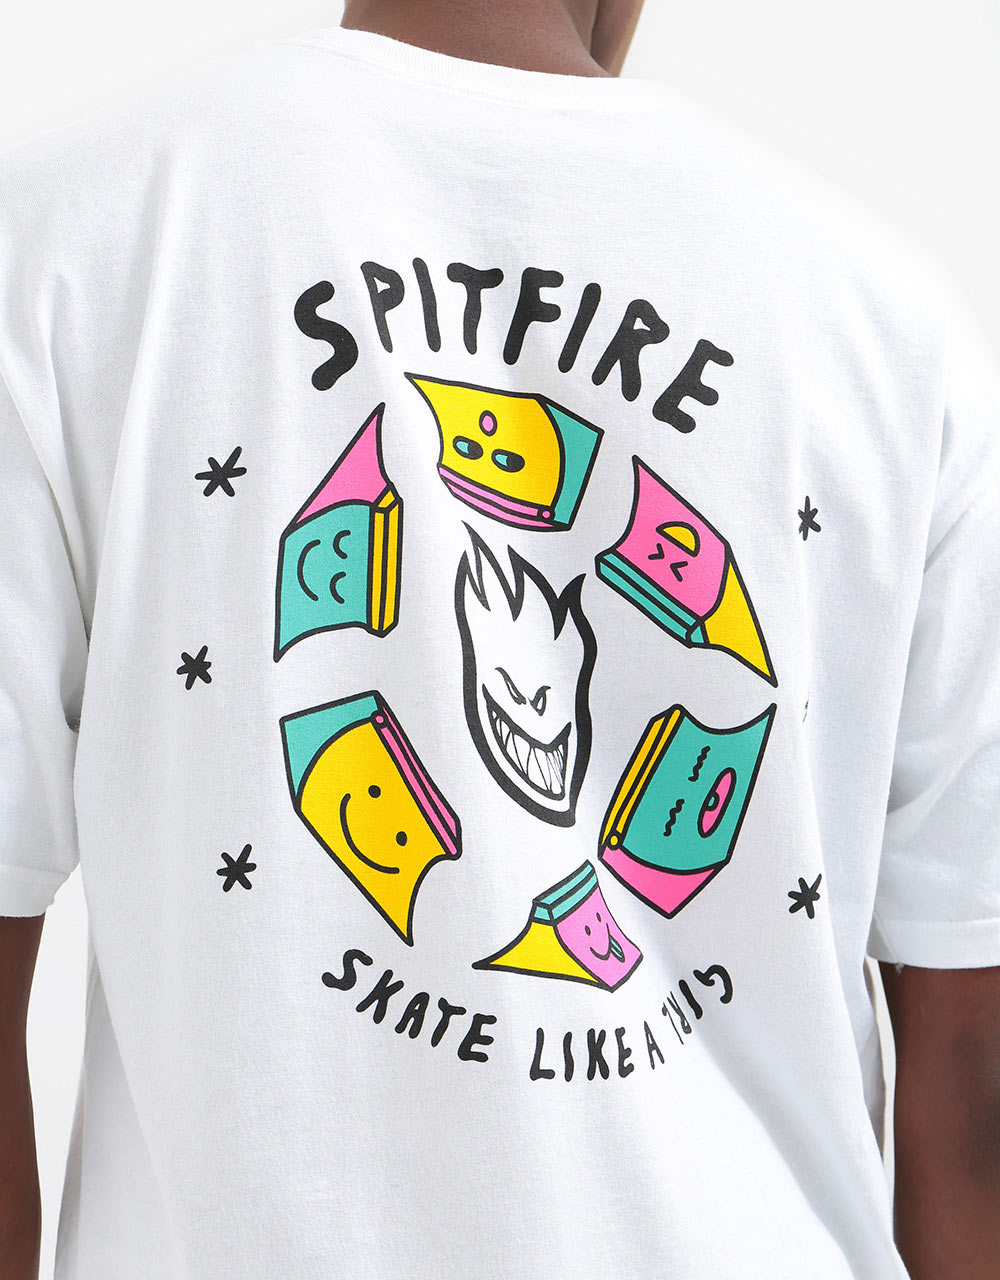 Spitfire Skate Like a Girl T-Shirt - White